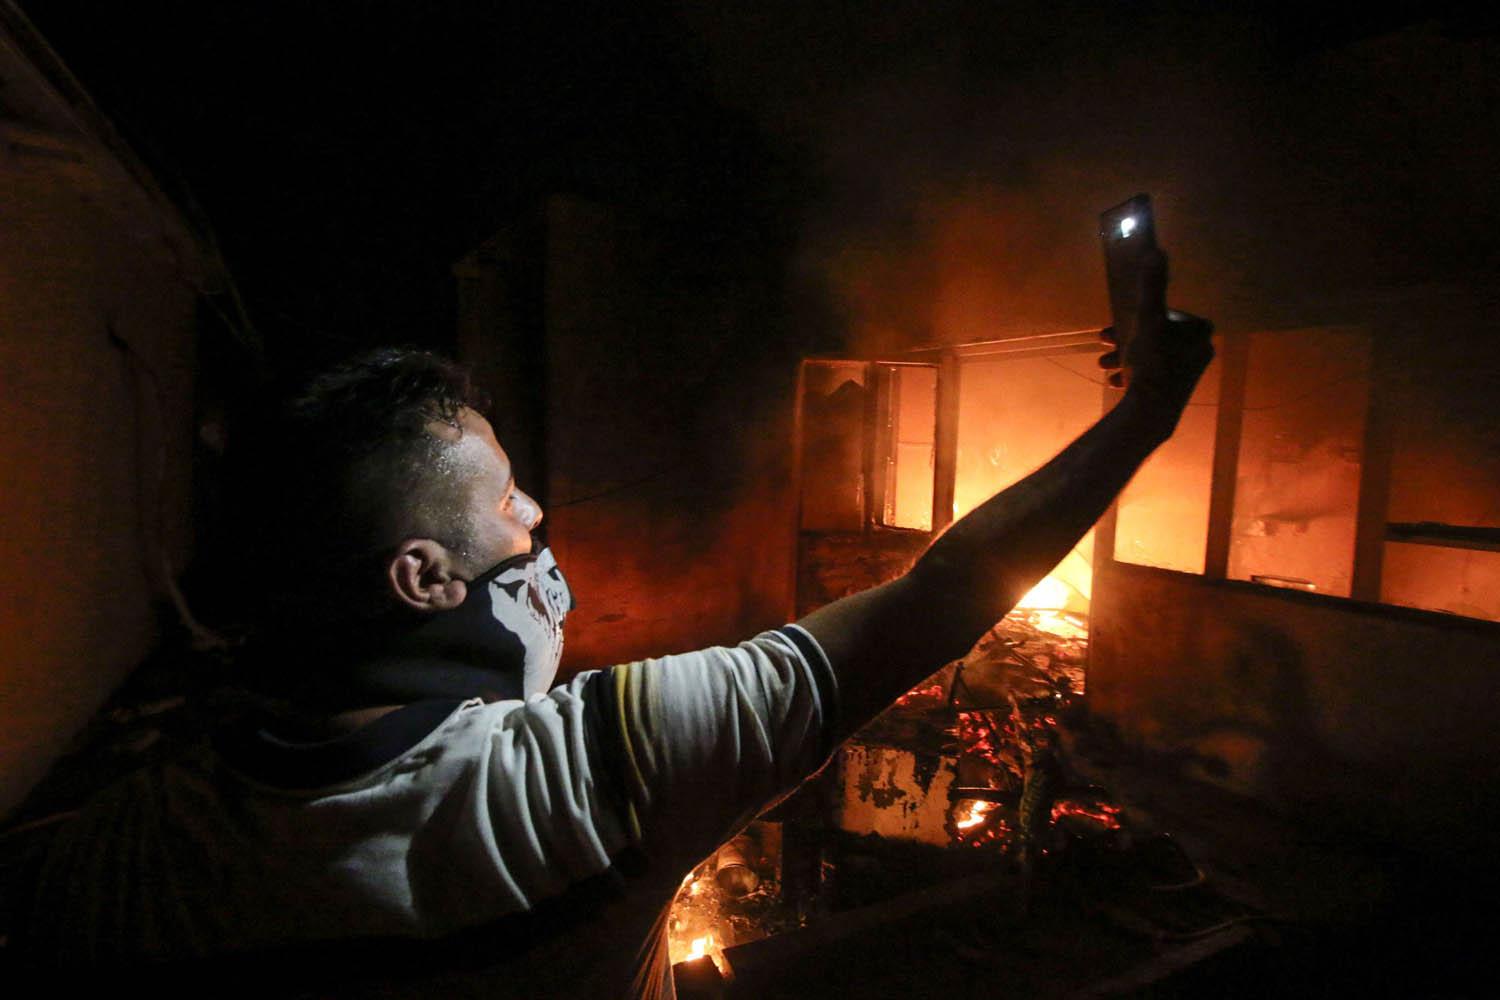 عراقي يأخذ صورة سيلفي وسط حرائق القنصلية الإيرانية في البصرة